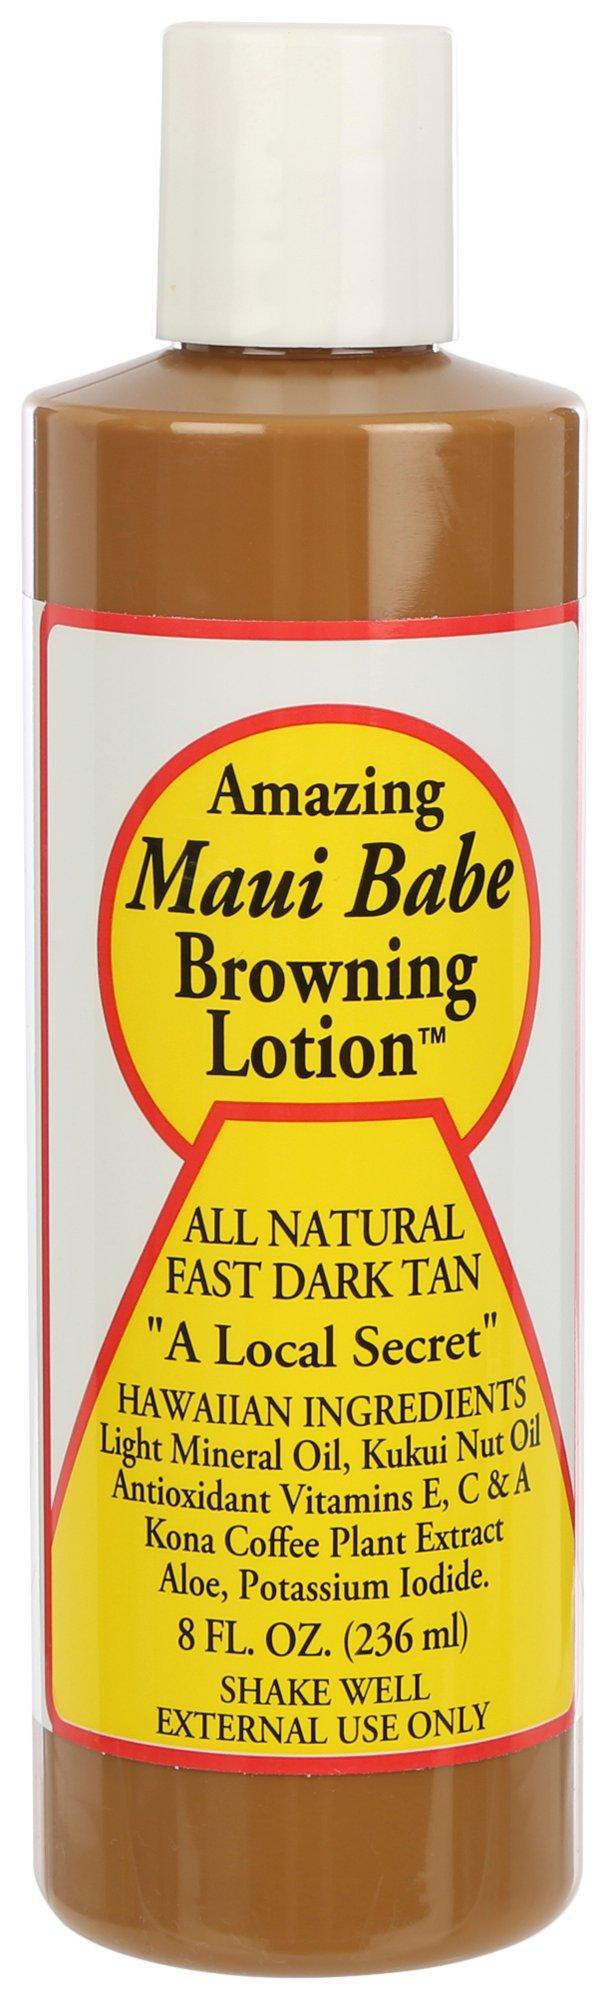 Maui Babe 8 Fl.Oz. All Natural Dark Tan Browning Lotion